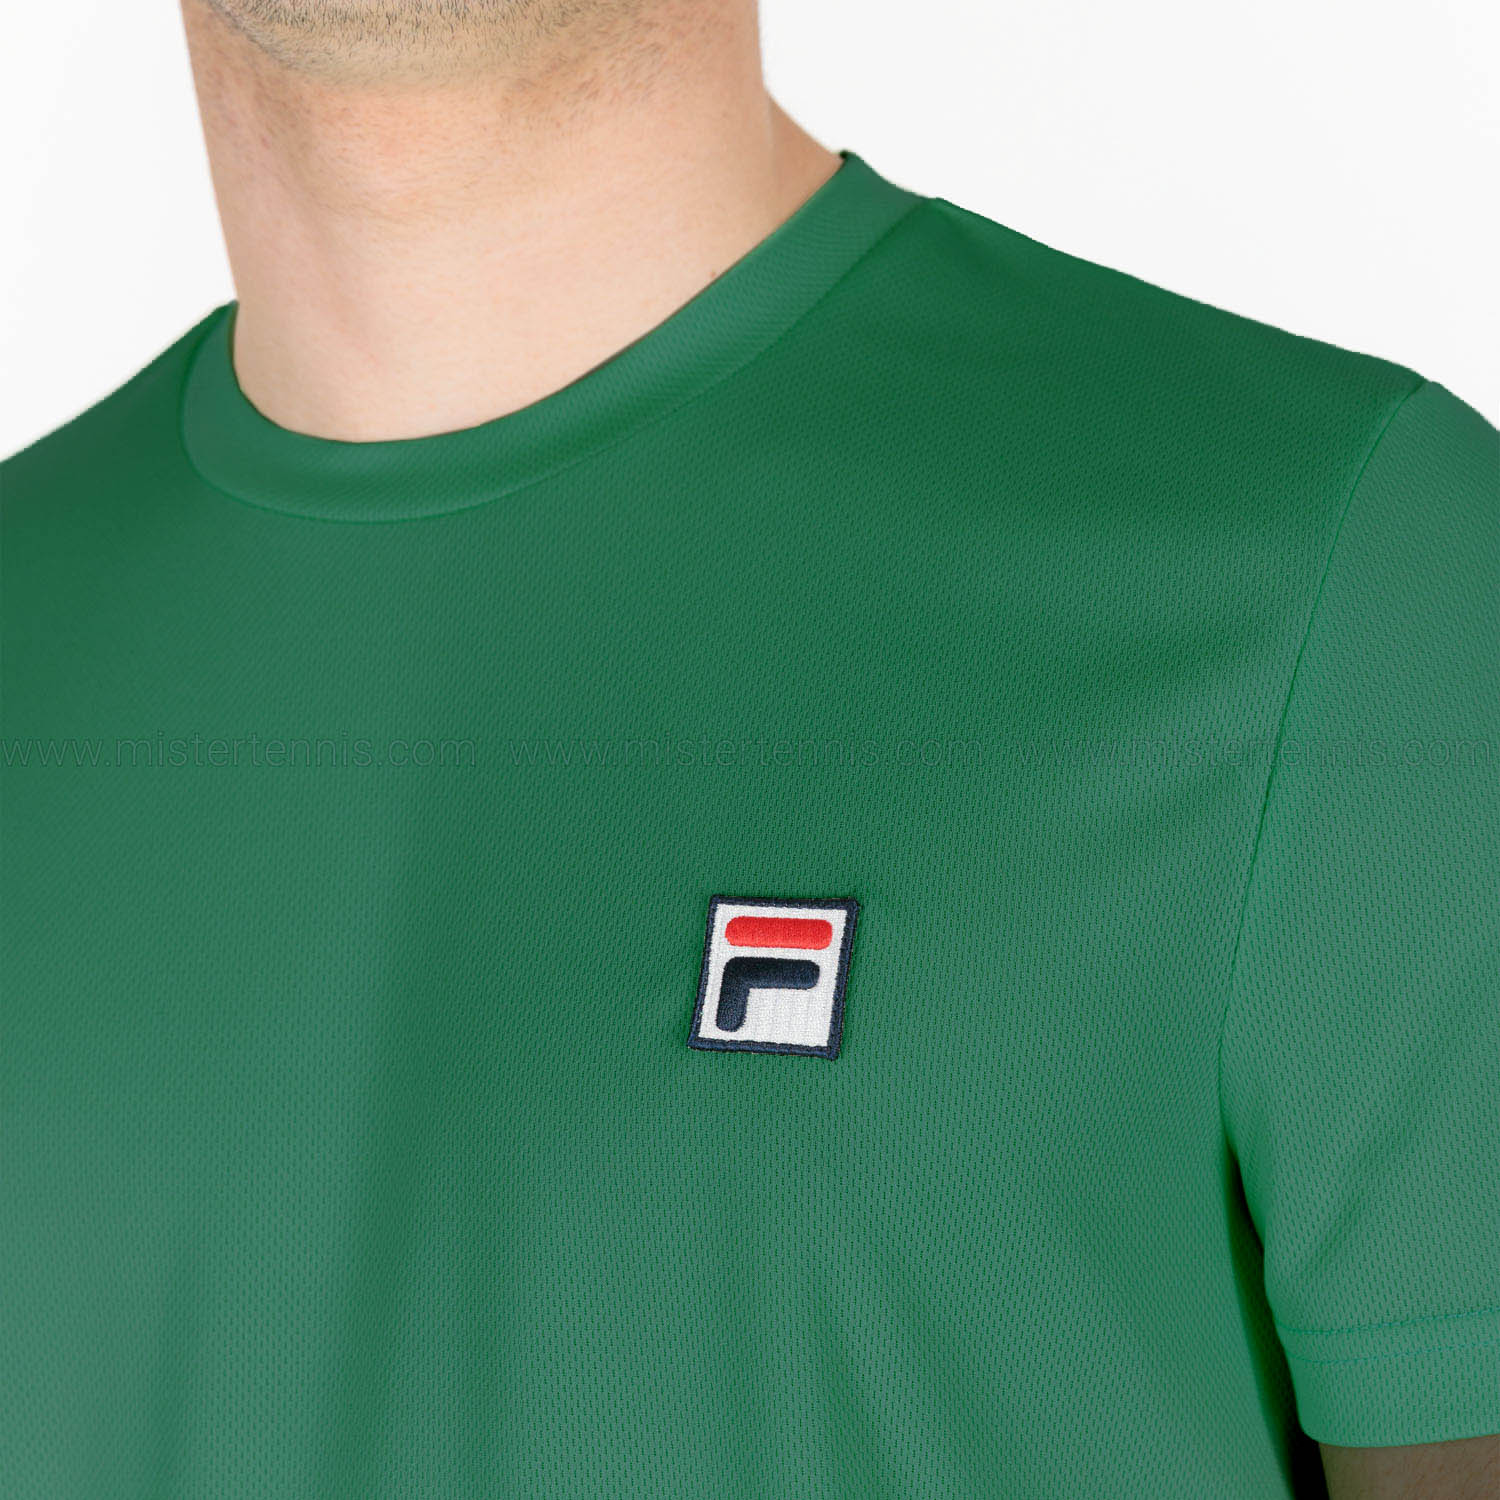 Fila Dani T-Shirt - Ultramarine Green